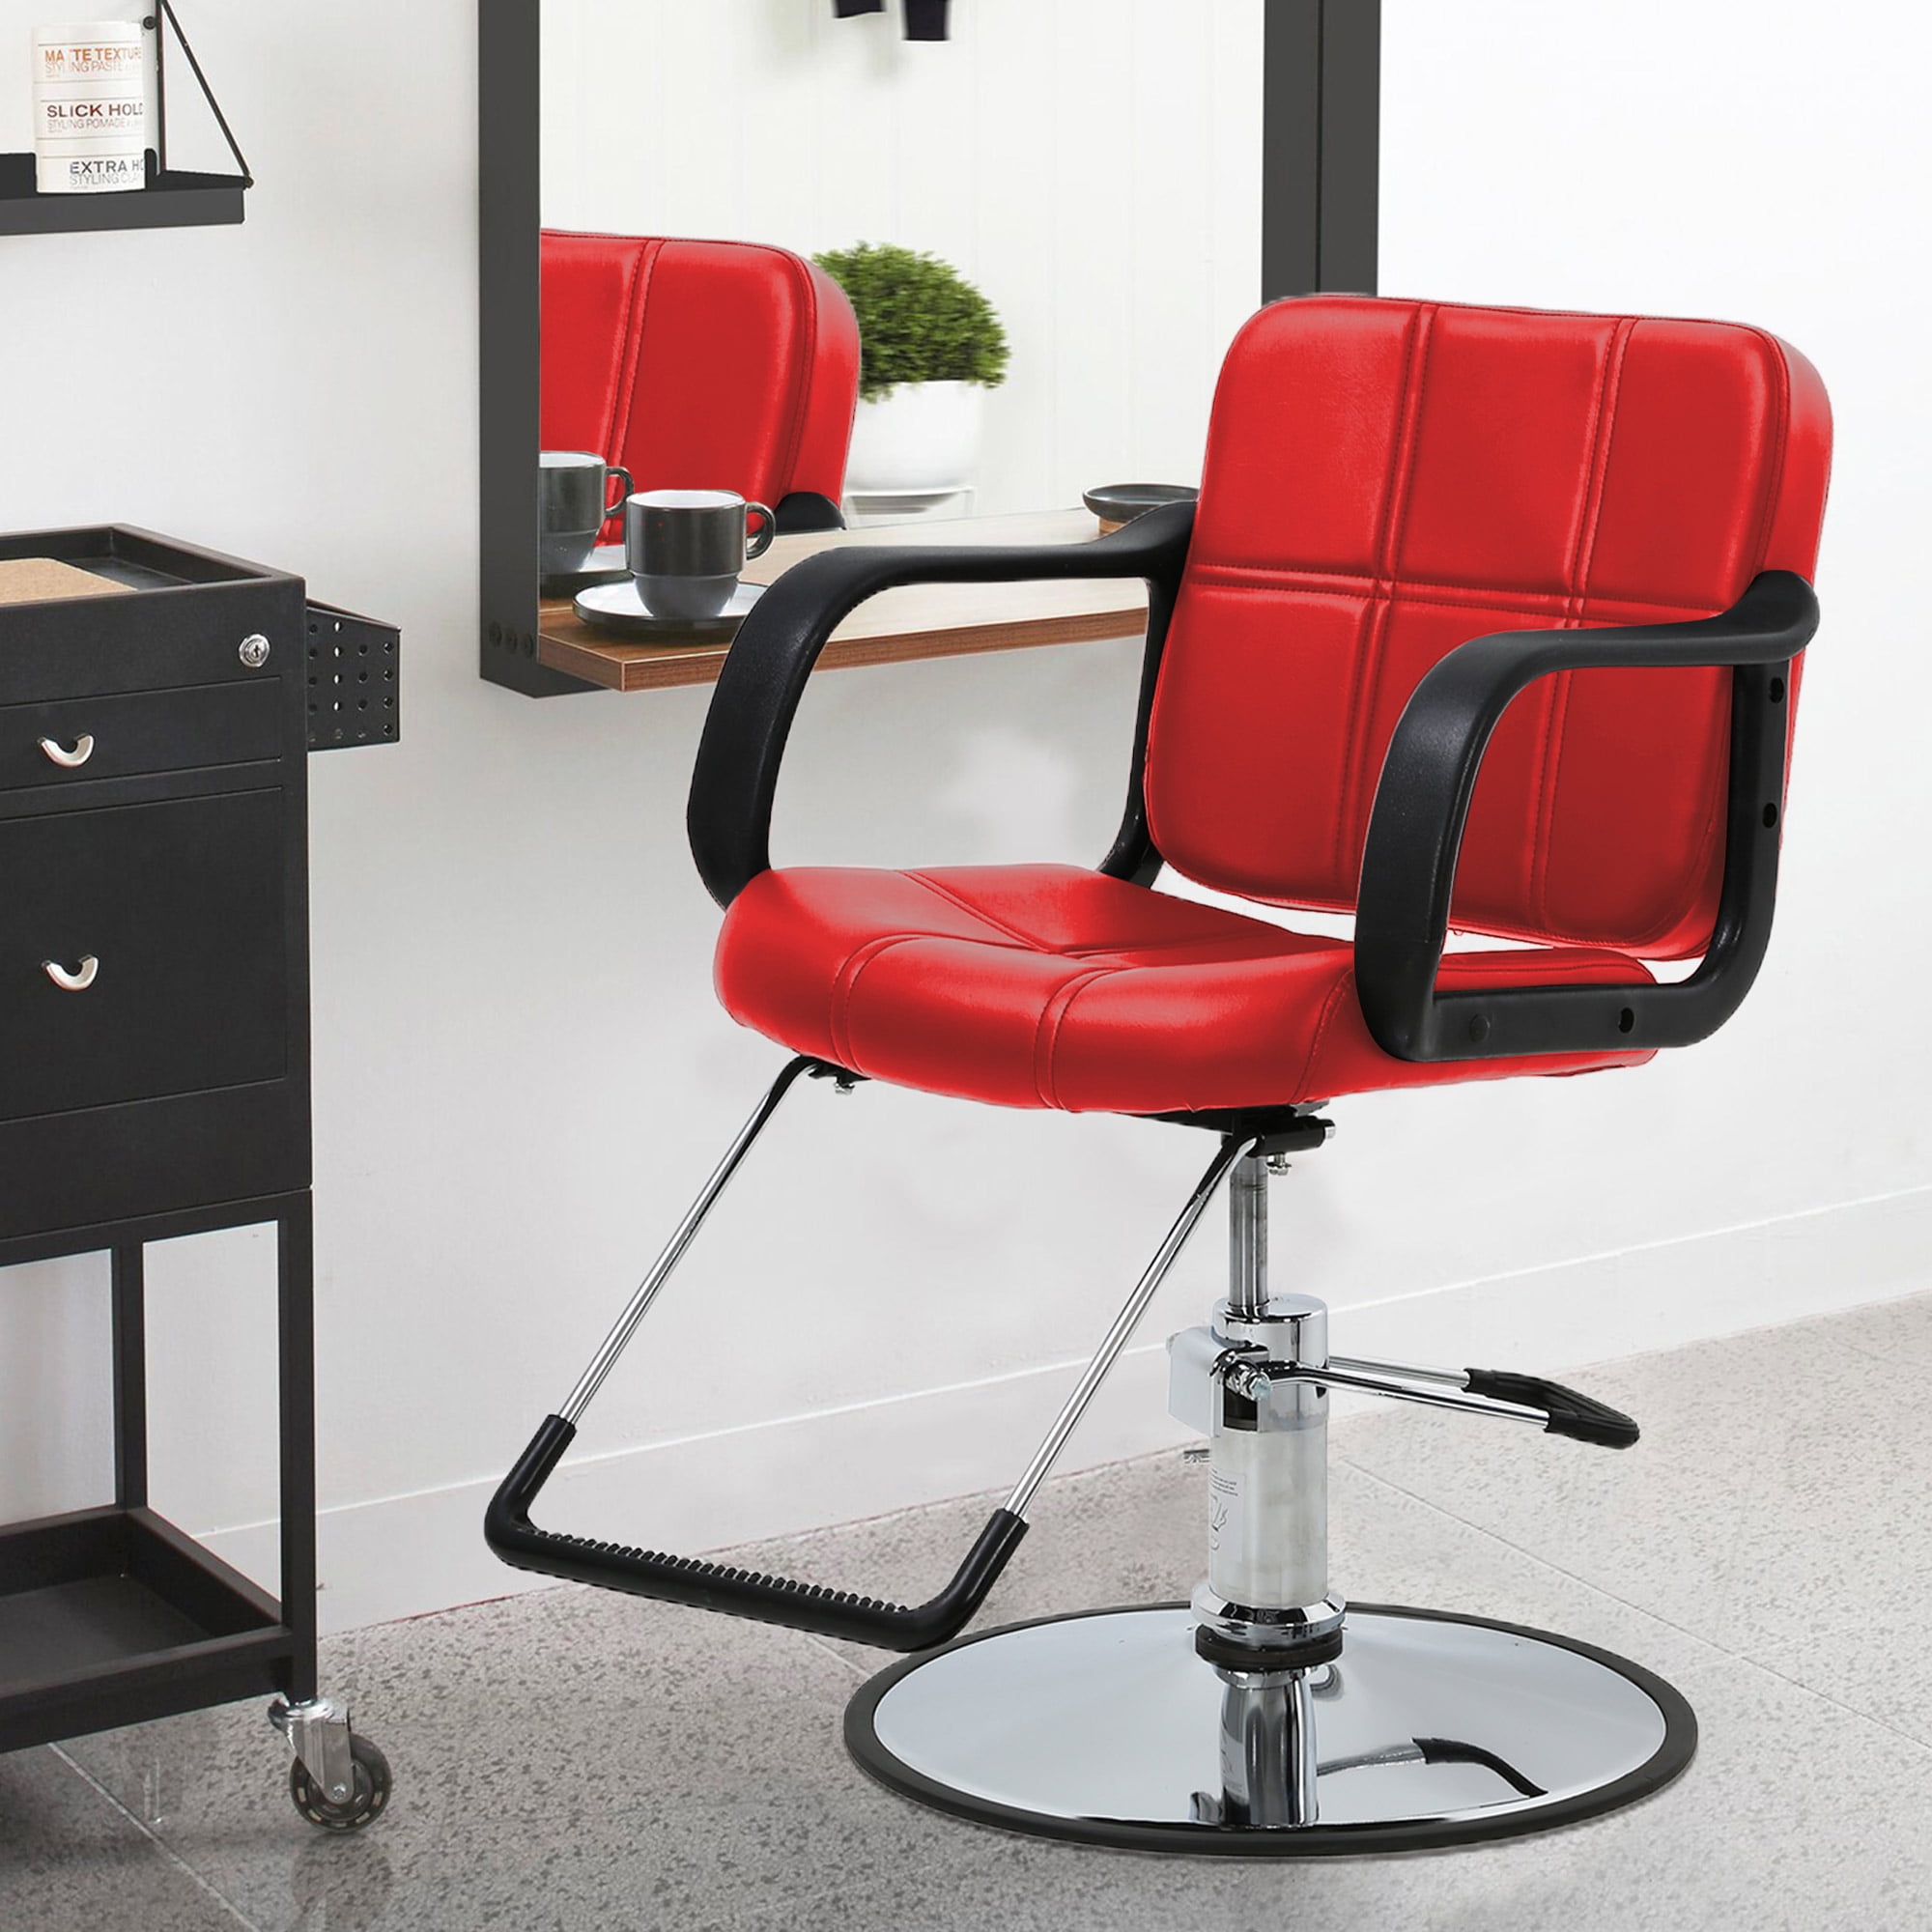 Hair Salon Chair Barber Chair Recline Chair Styling Heavy Duty Hydraulic  Pump Barber Chair 360°Swivel Chair Shampoo Styling Hair Chairs Hair Cutting,Salon  chair